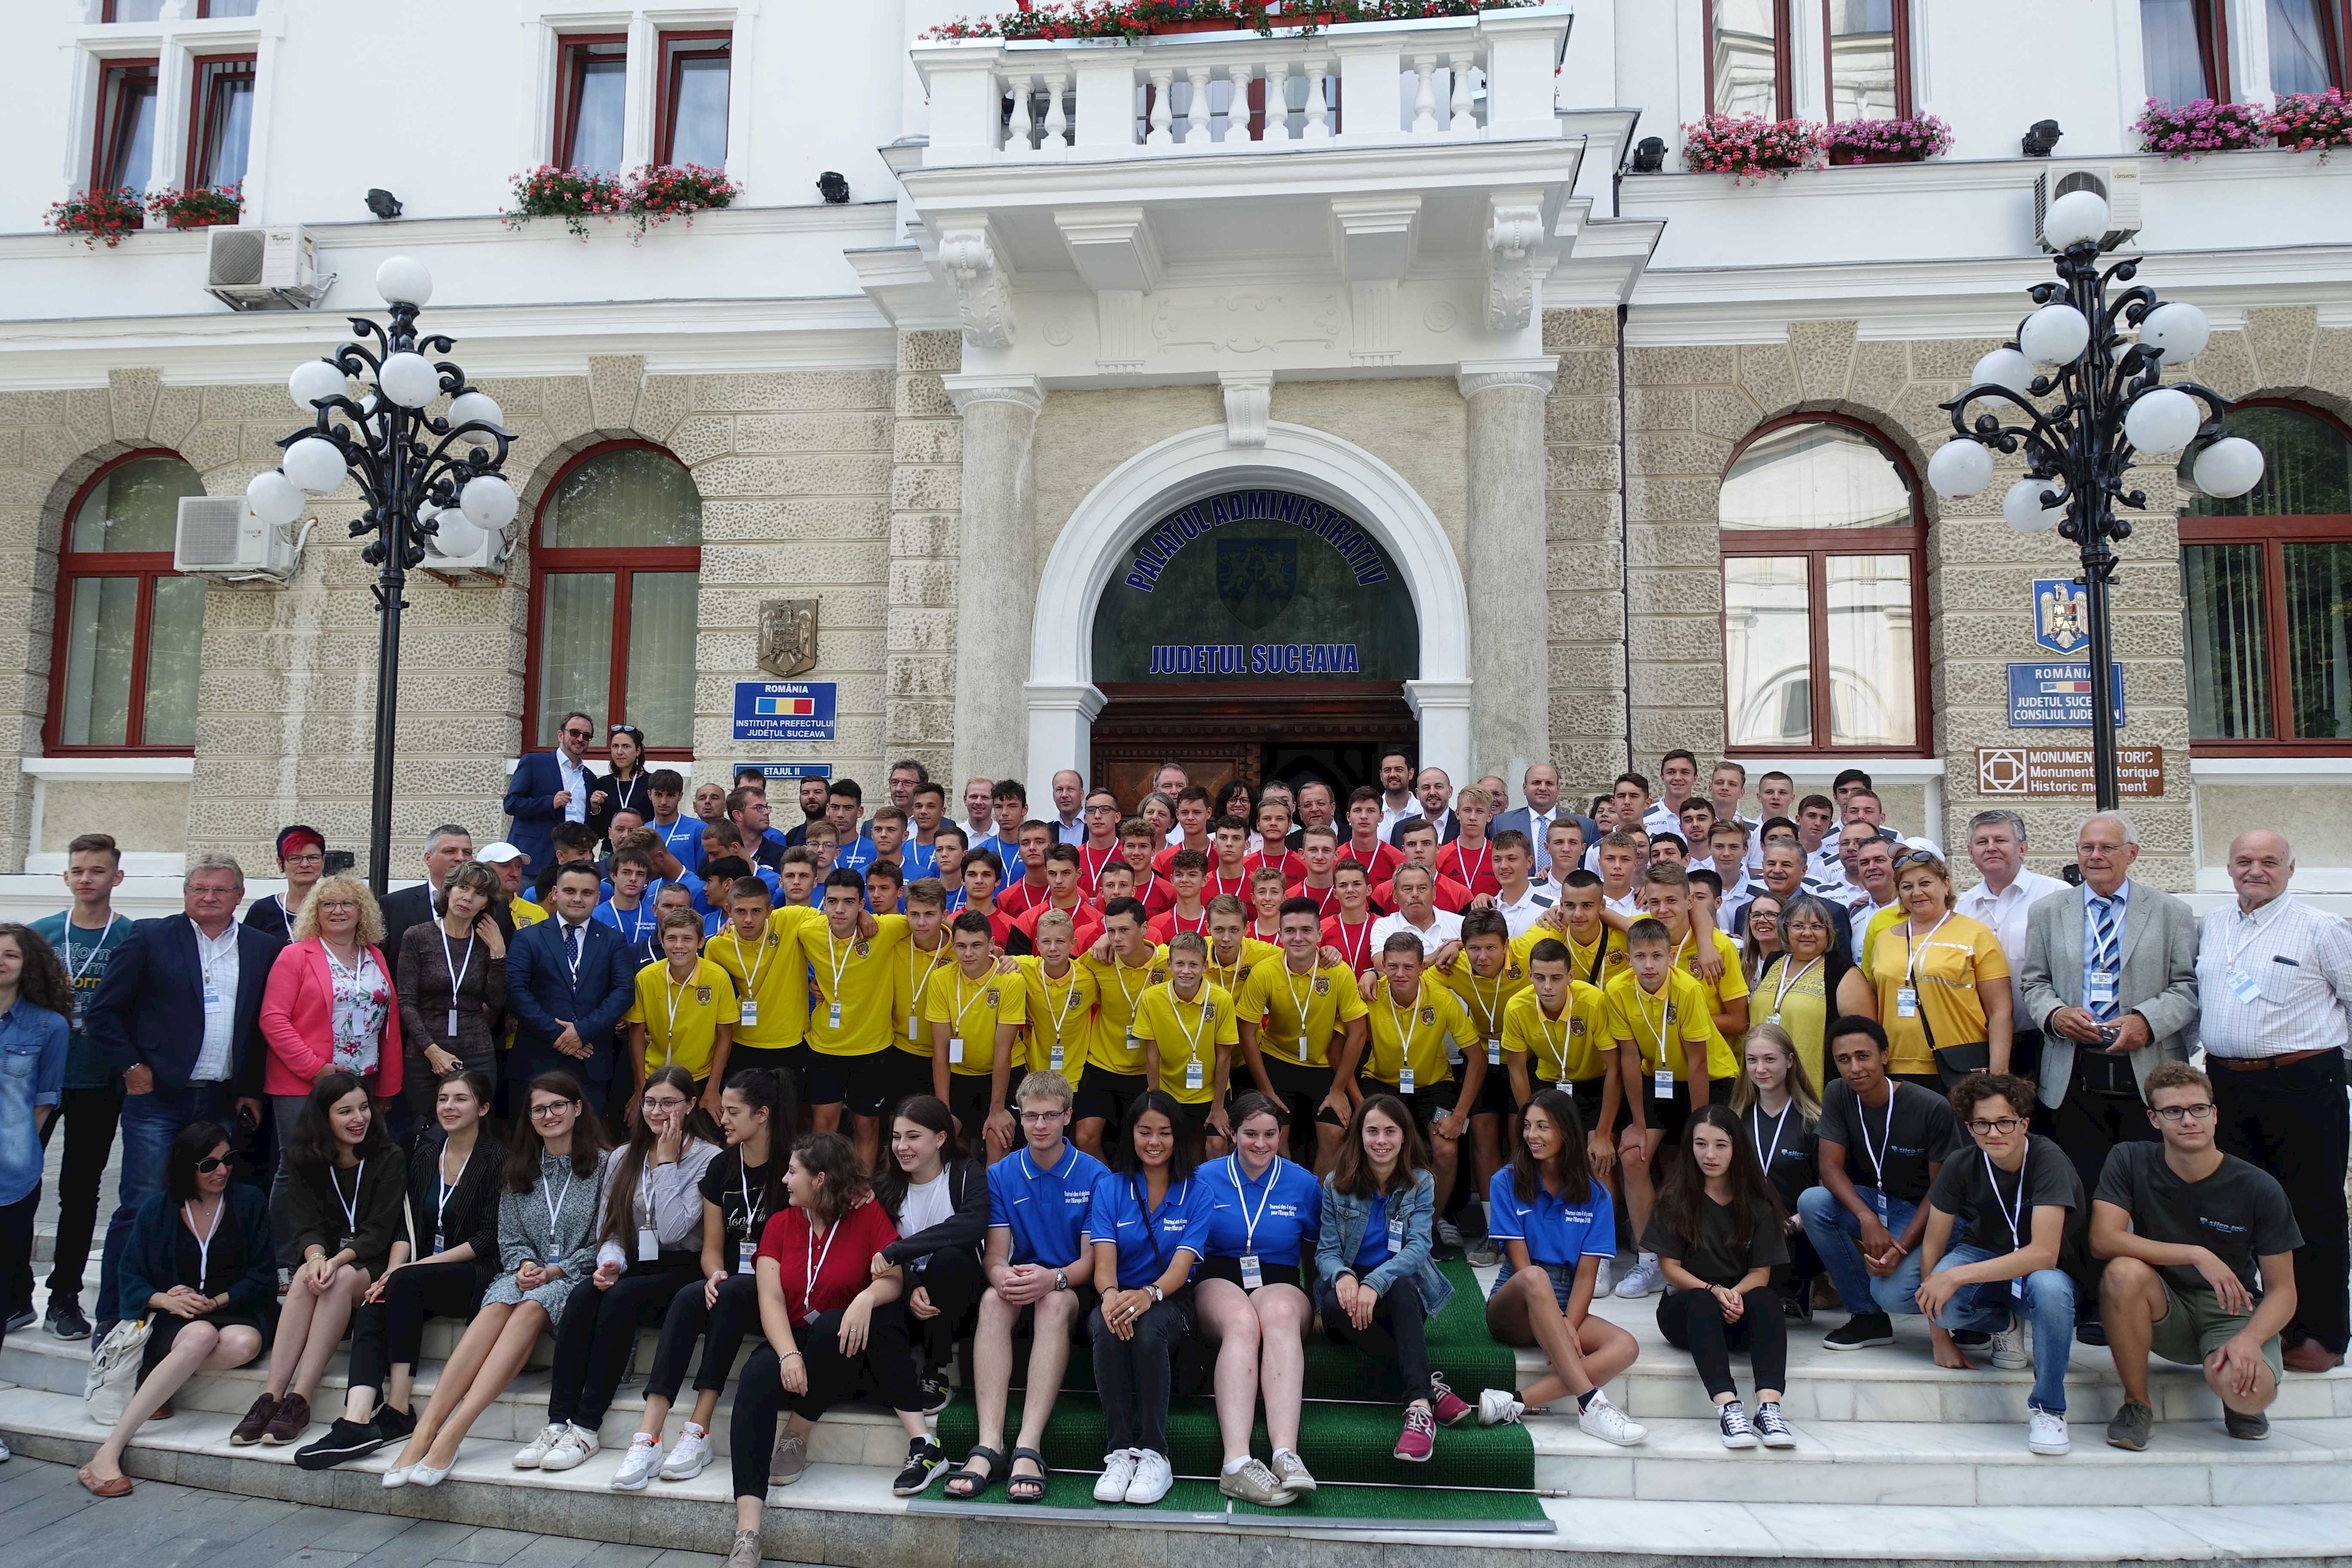 Jugendbegegnung 4 Regionen: Gelebte Völkerverständigung in den Sommerferien!